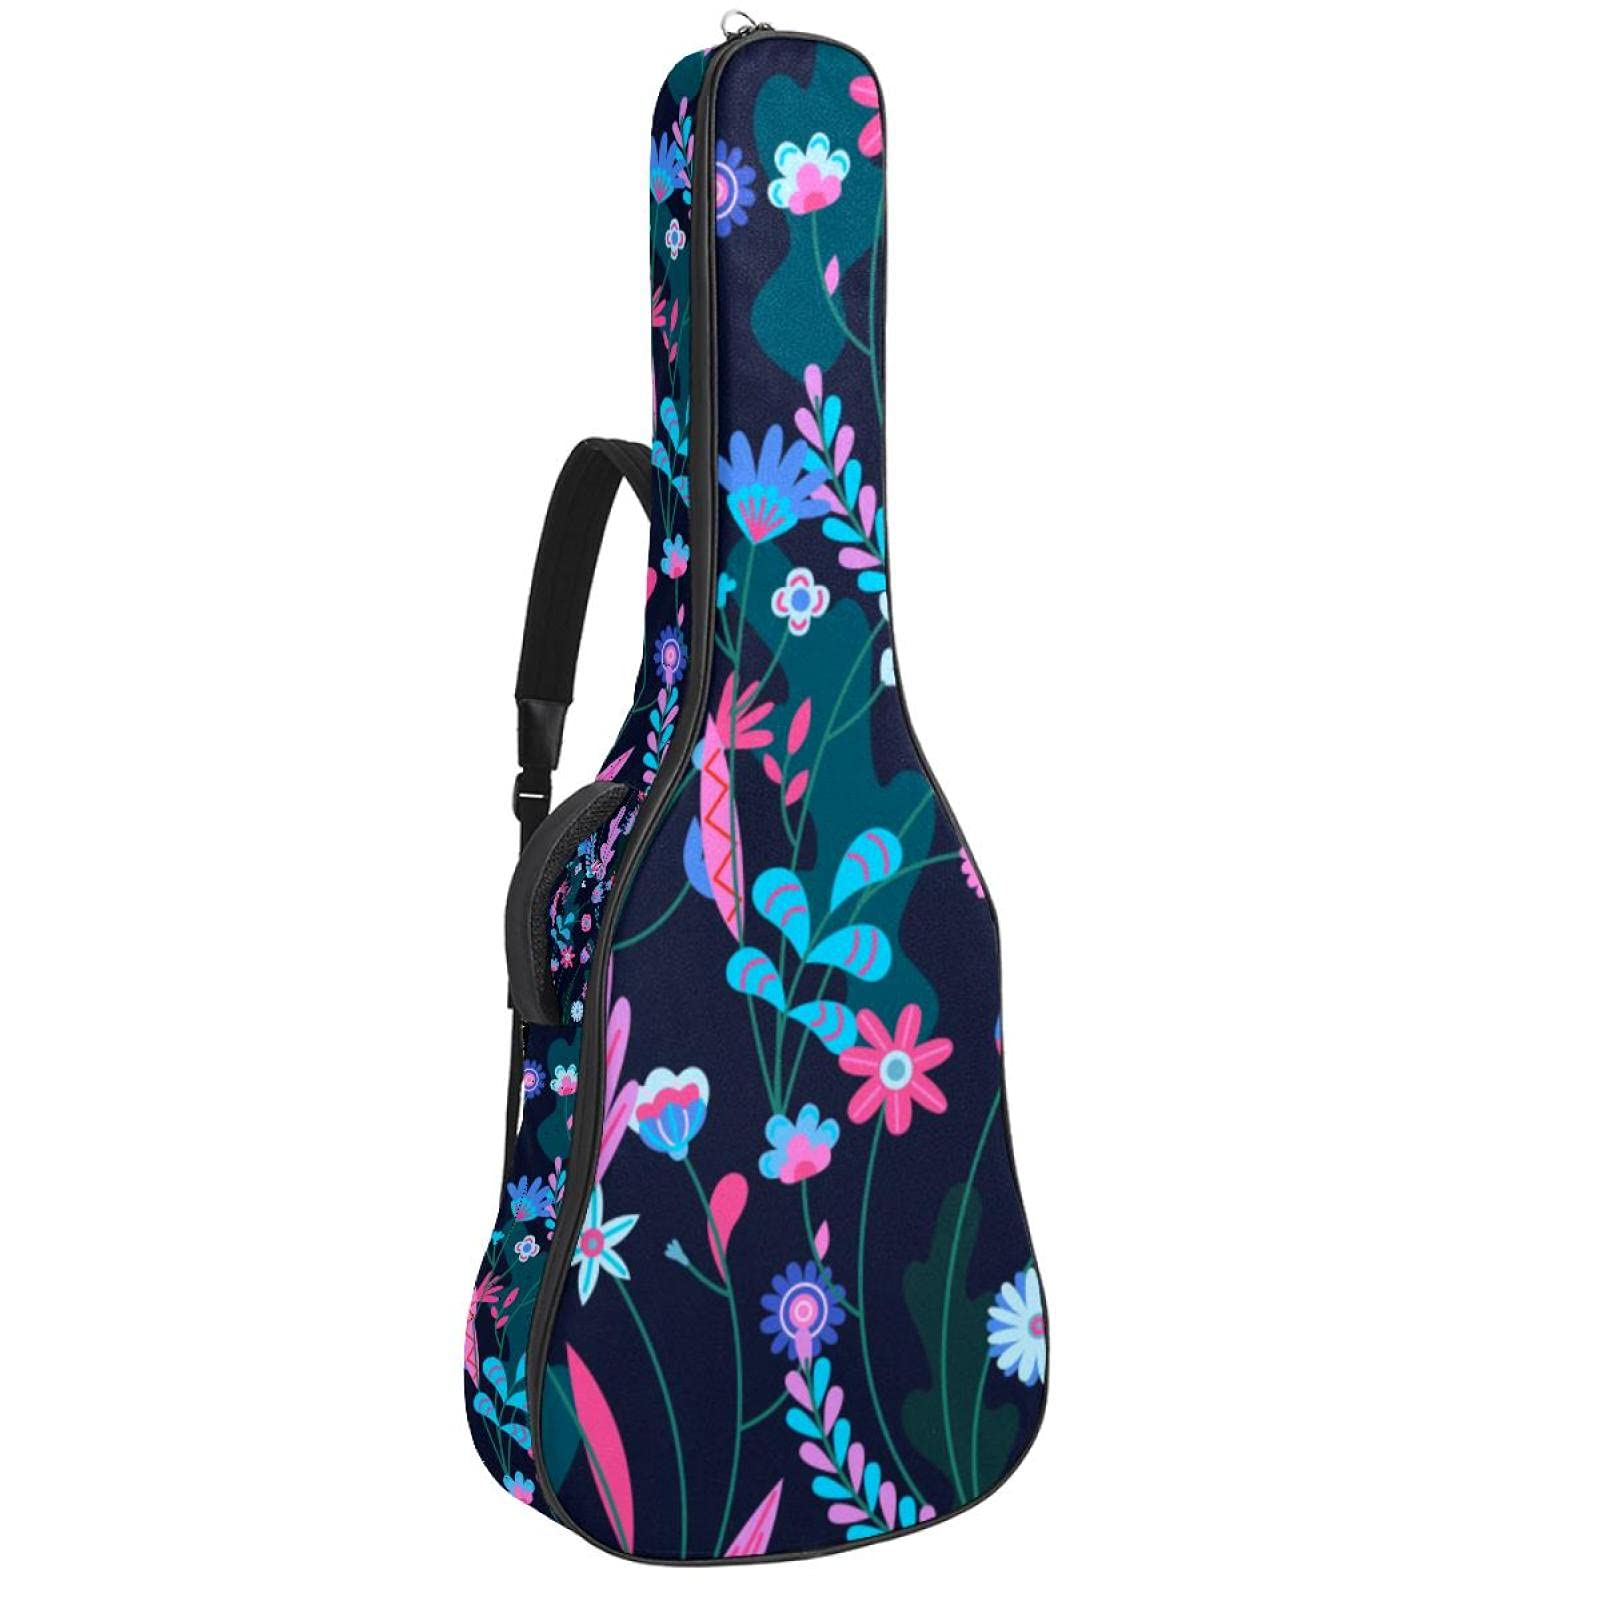 Bunte Gitarrentasche mit floralem Muster, wasserdichter Reißverschluss, weicher Gitarren-Rucksack für Bassgitarre und klassische Folk-Gitarre